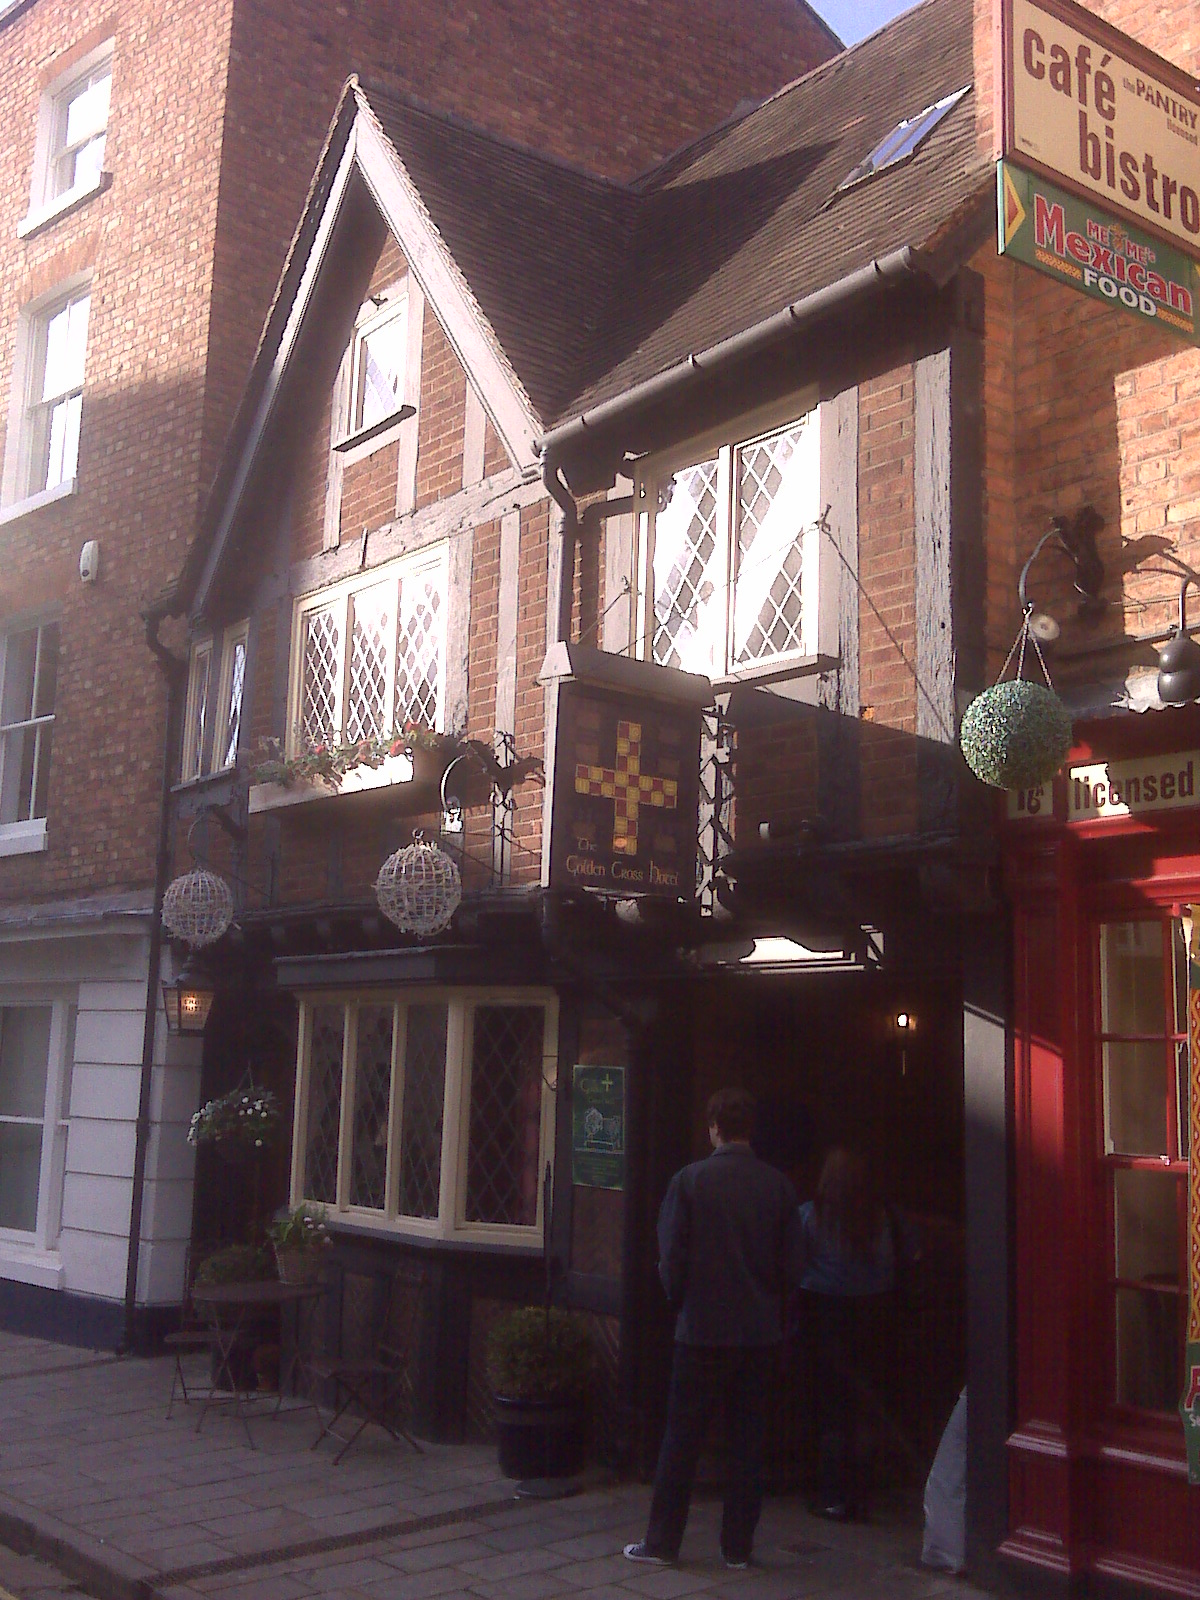 We ignored the Golden Cross Inn, Shrewsbury